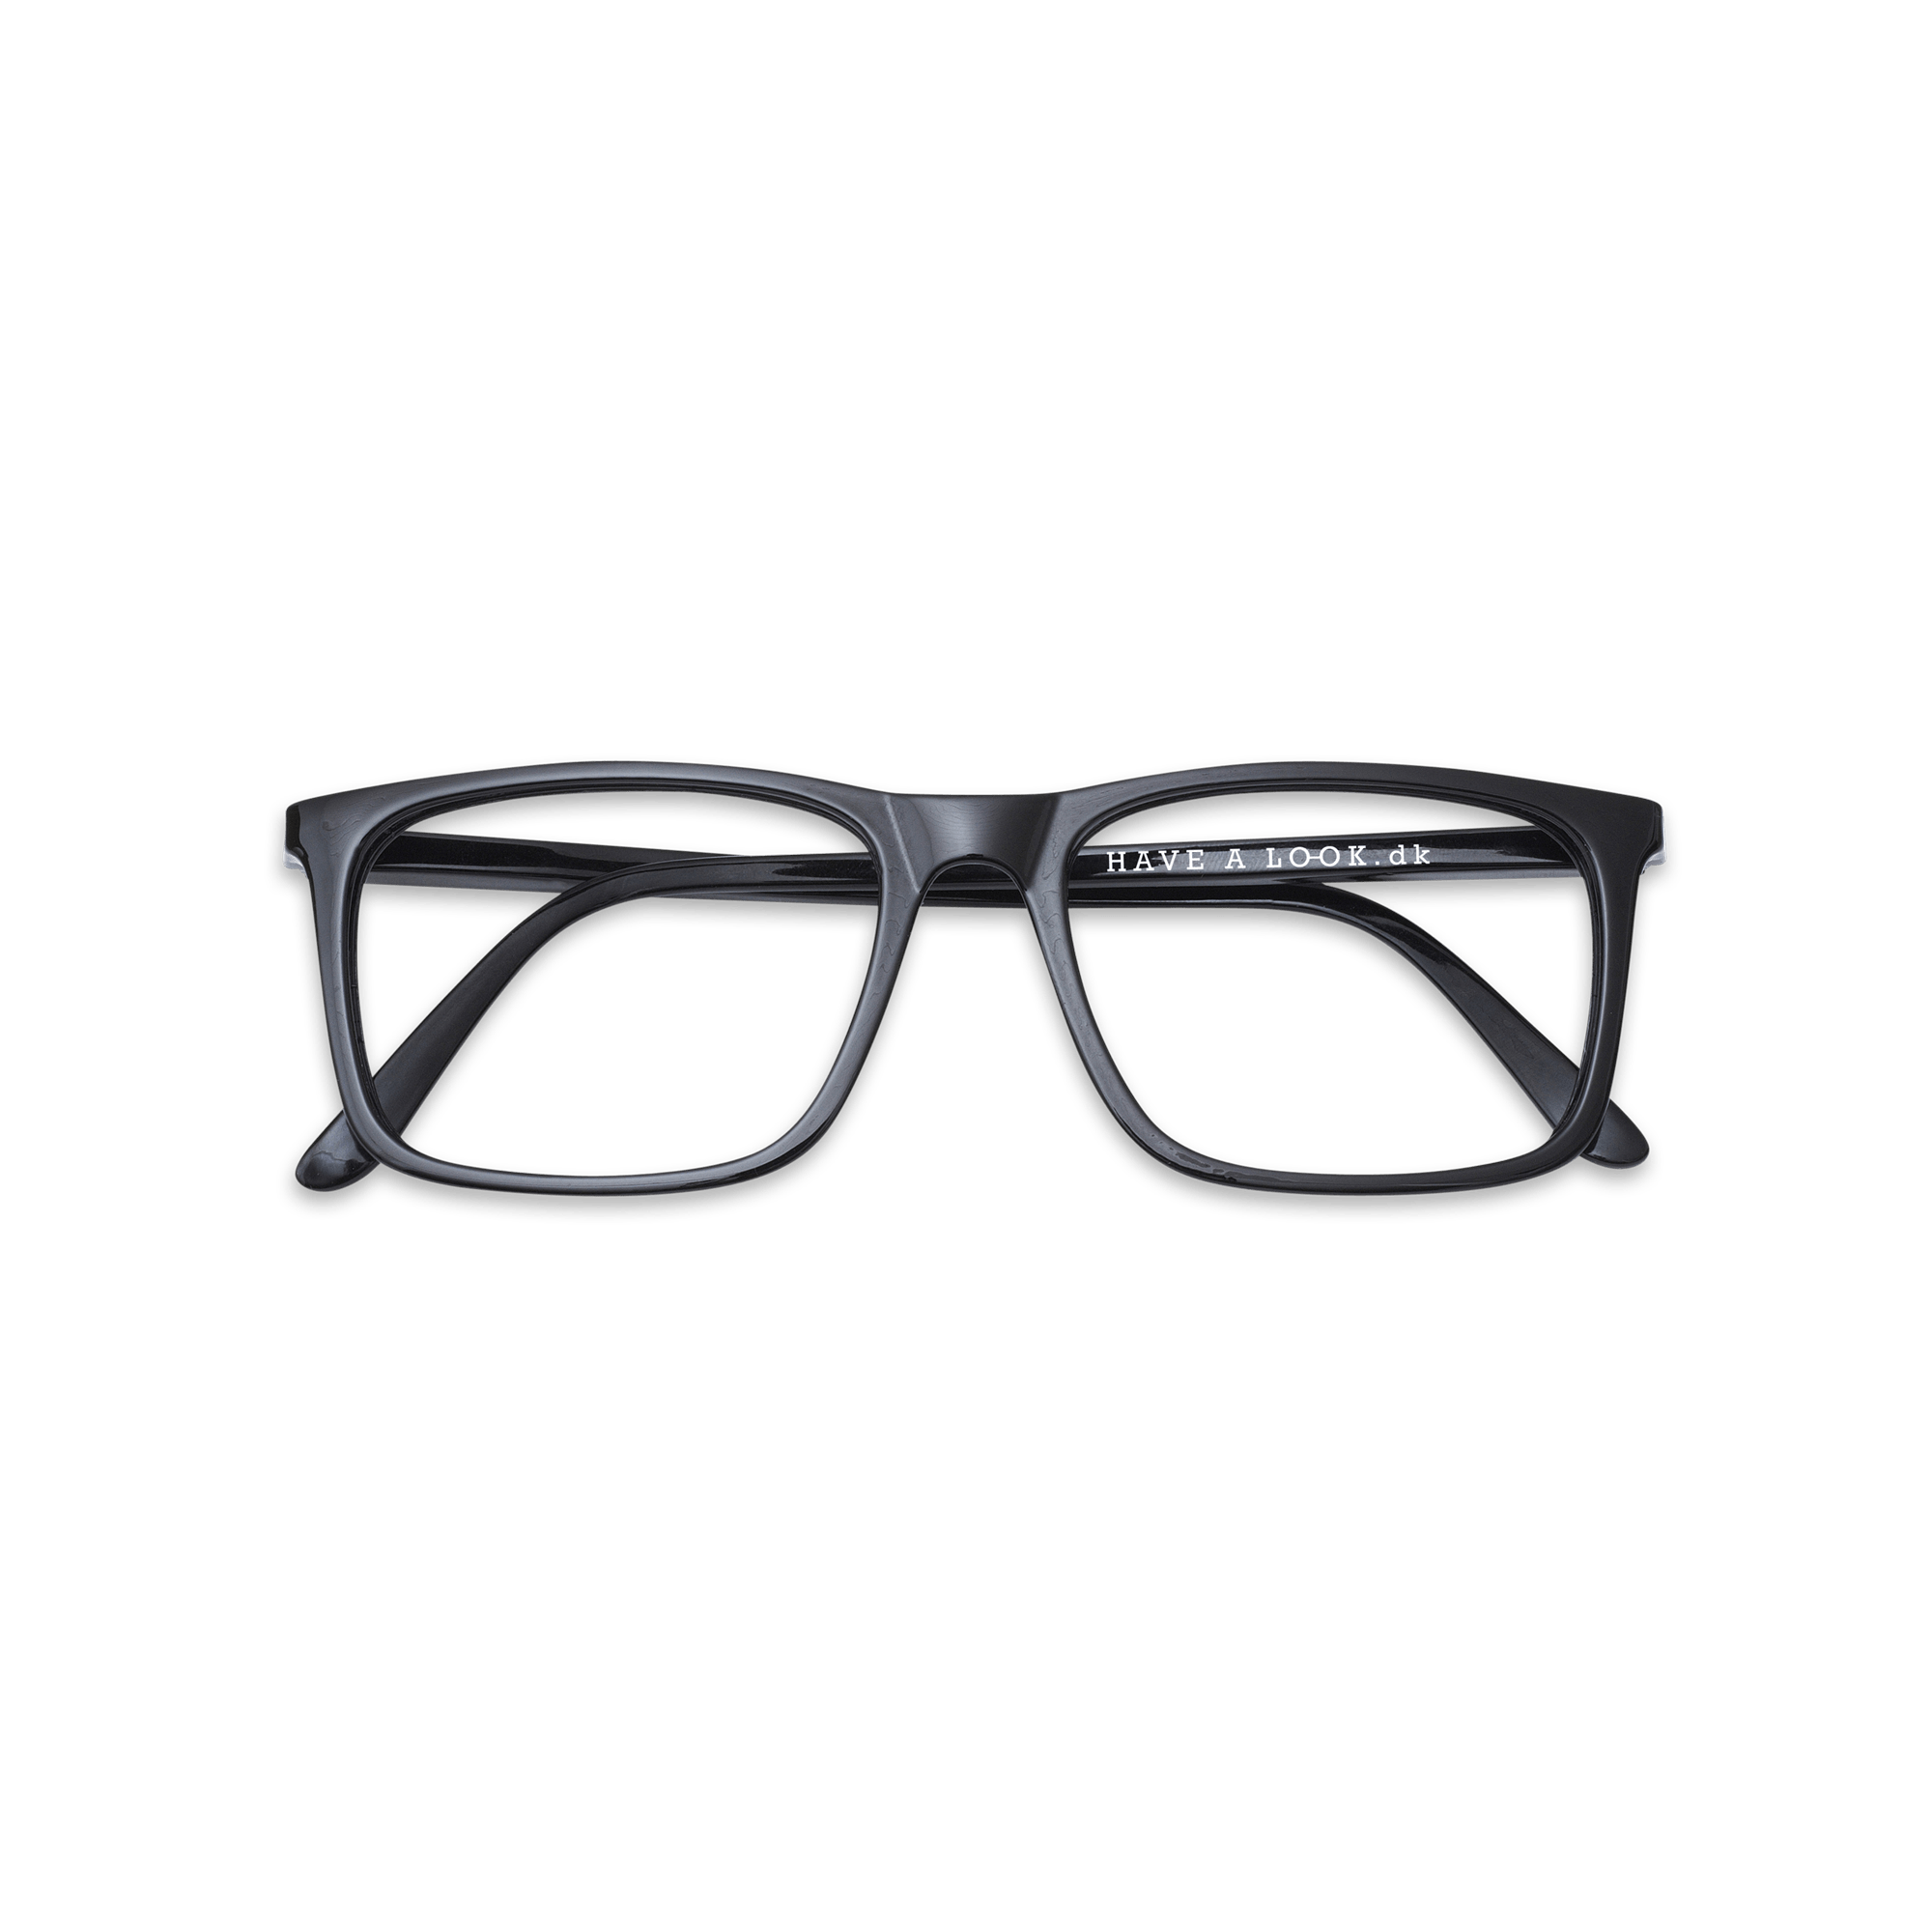 Minusbriller Type A - black